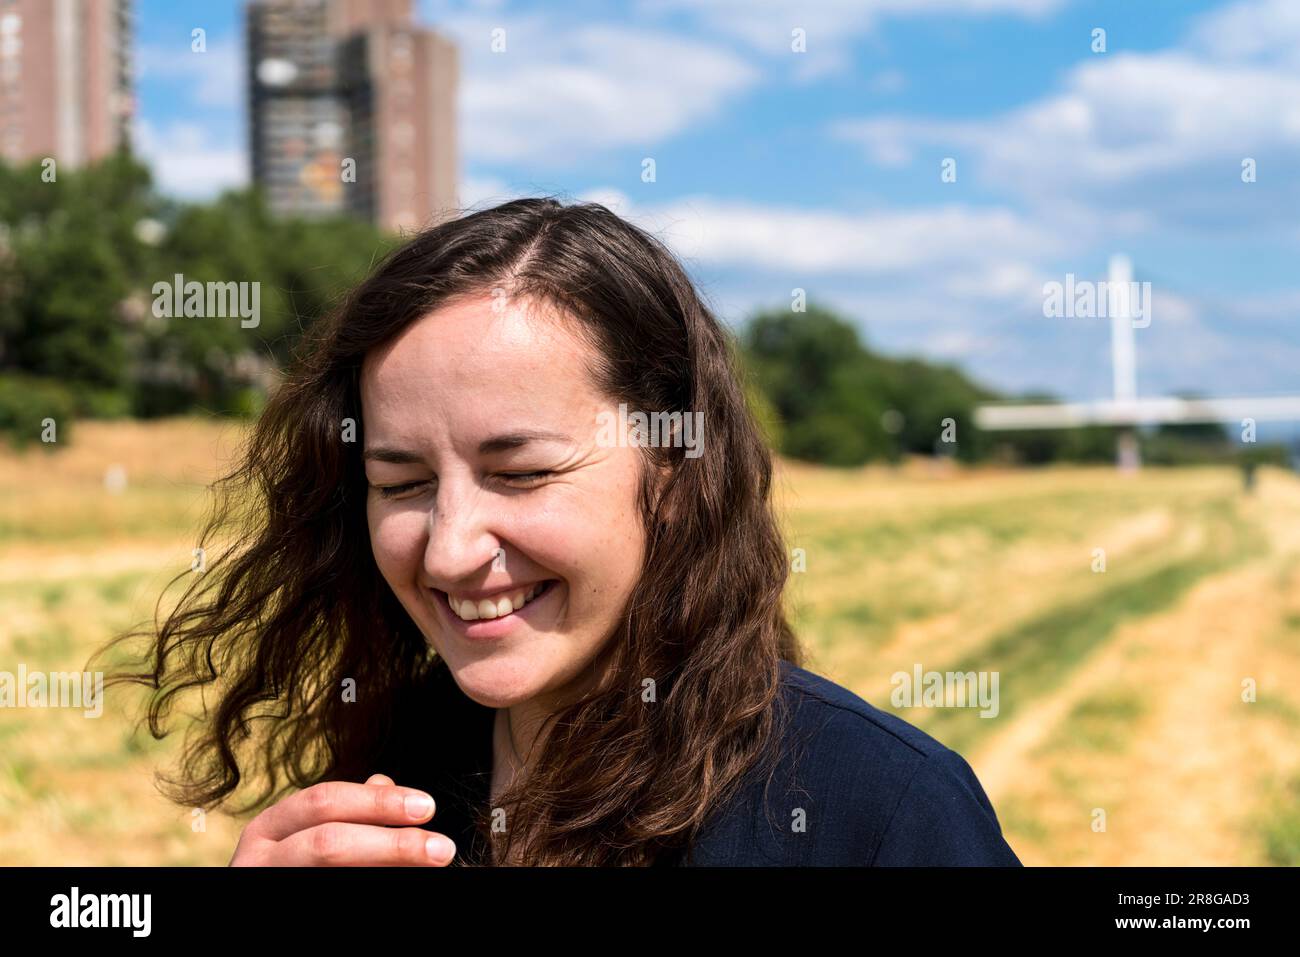 Junge Frau mit offenem Haar im städtischen Umfeld, lachend Stockfoto